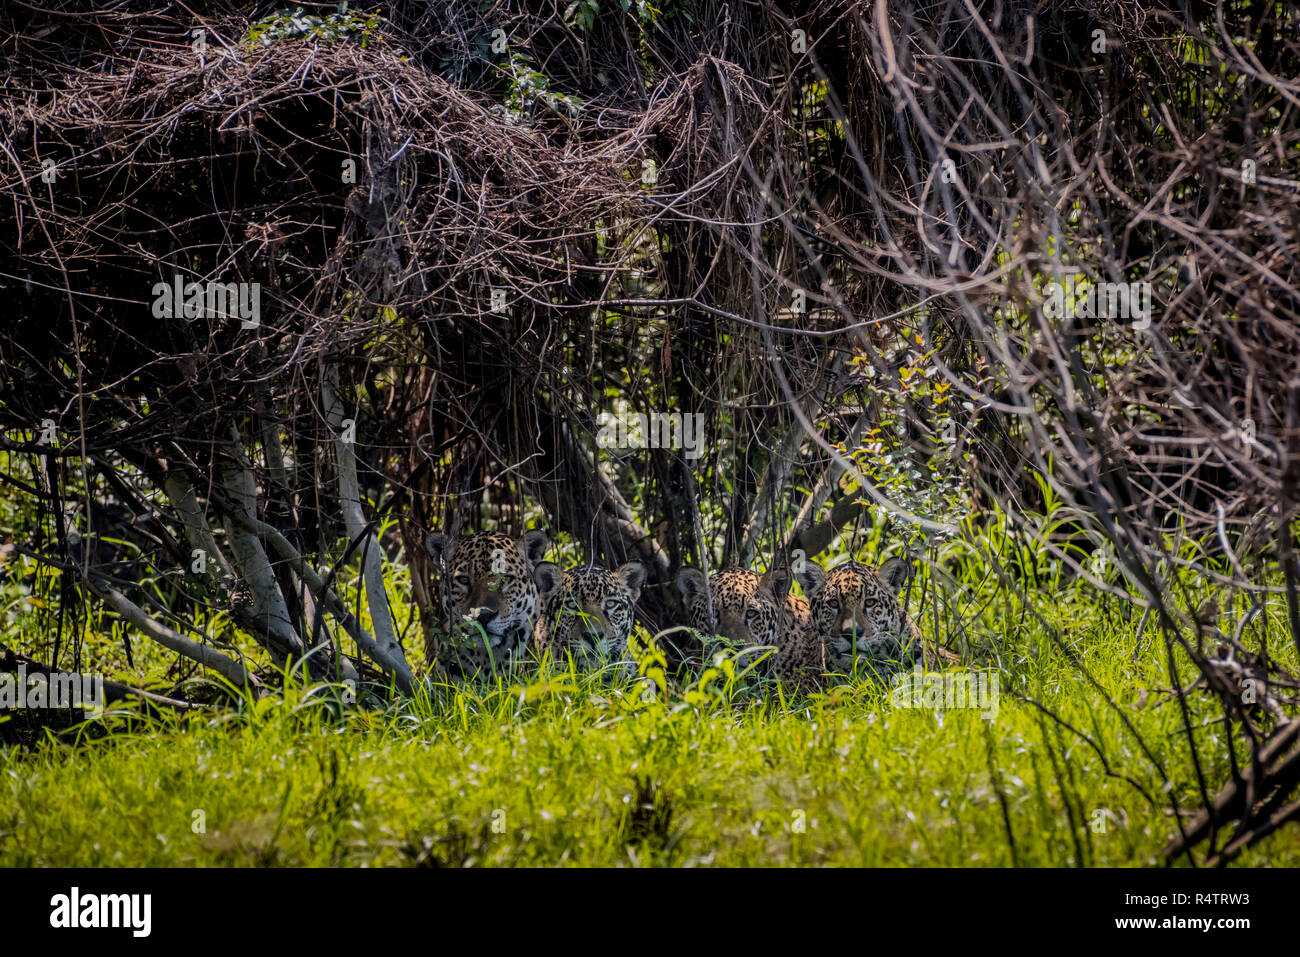 Quattro giaguari (Panthera onca) nascosta nella fitta vegetazione nelle boccole, Barranco Alto, Pantanal, Mato Grosso do Sul, Brasile Foto Stock